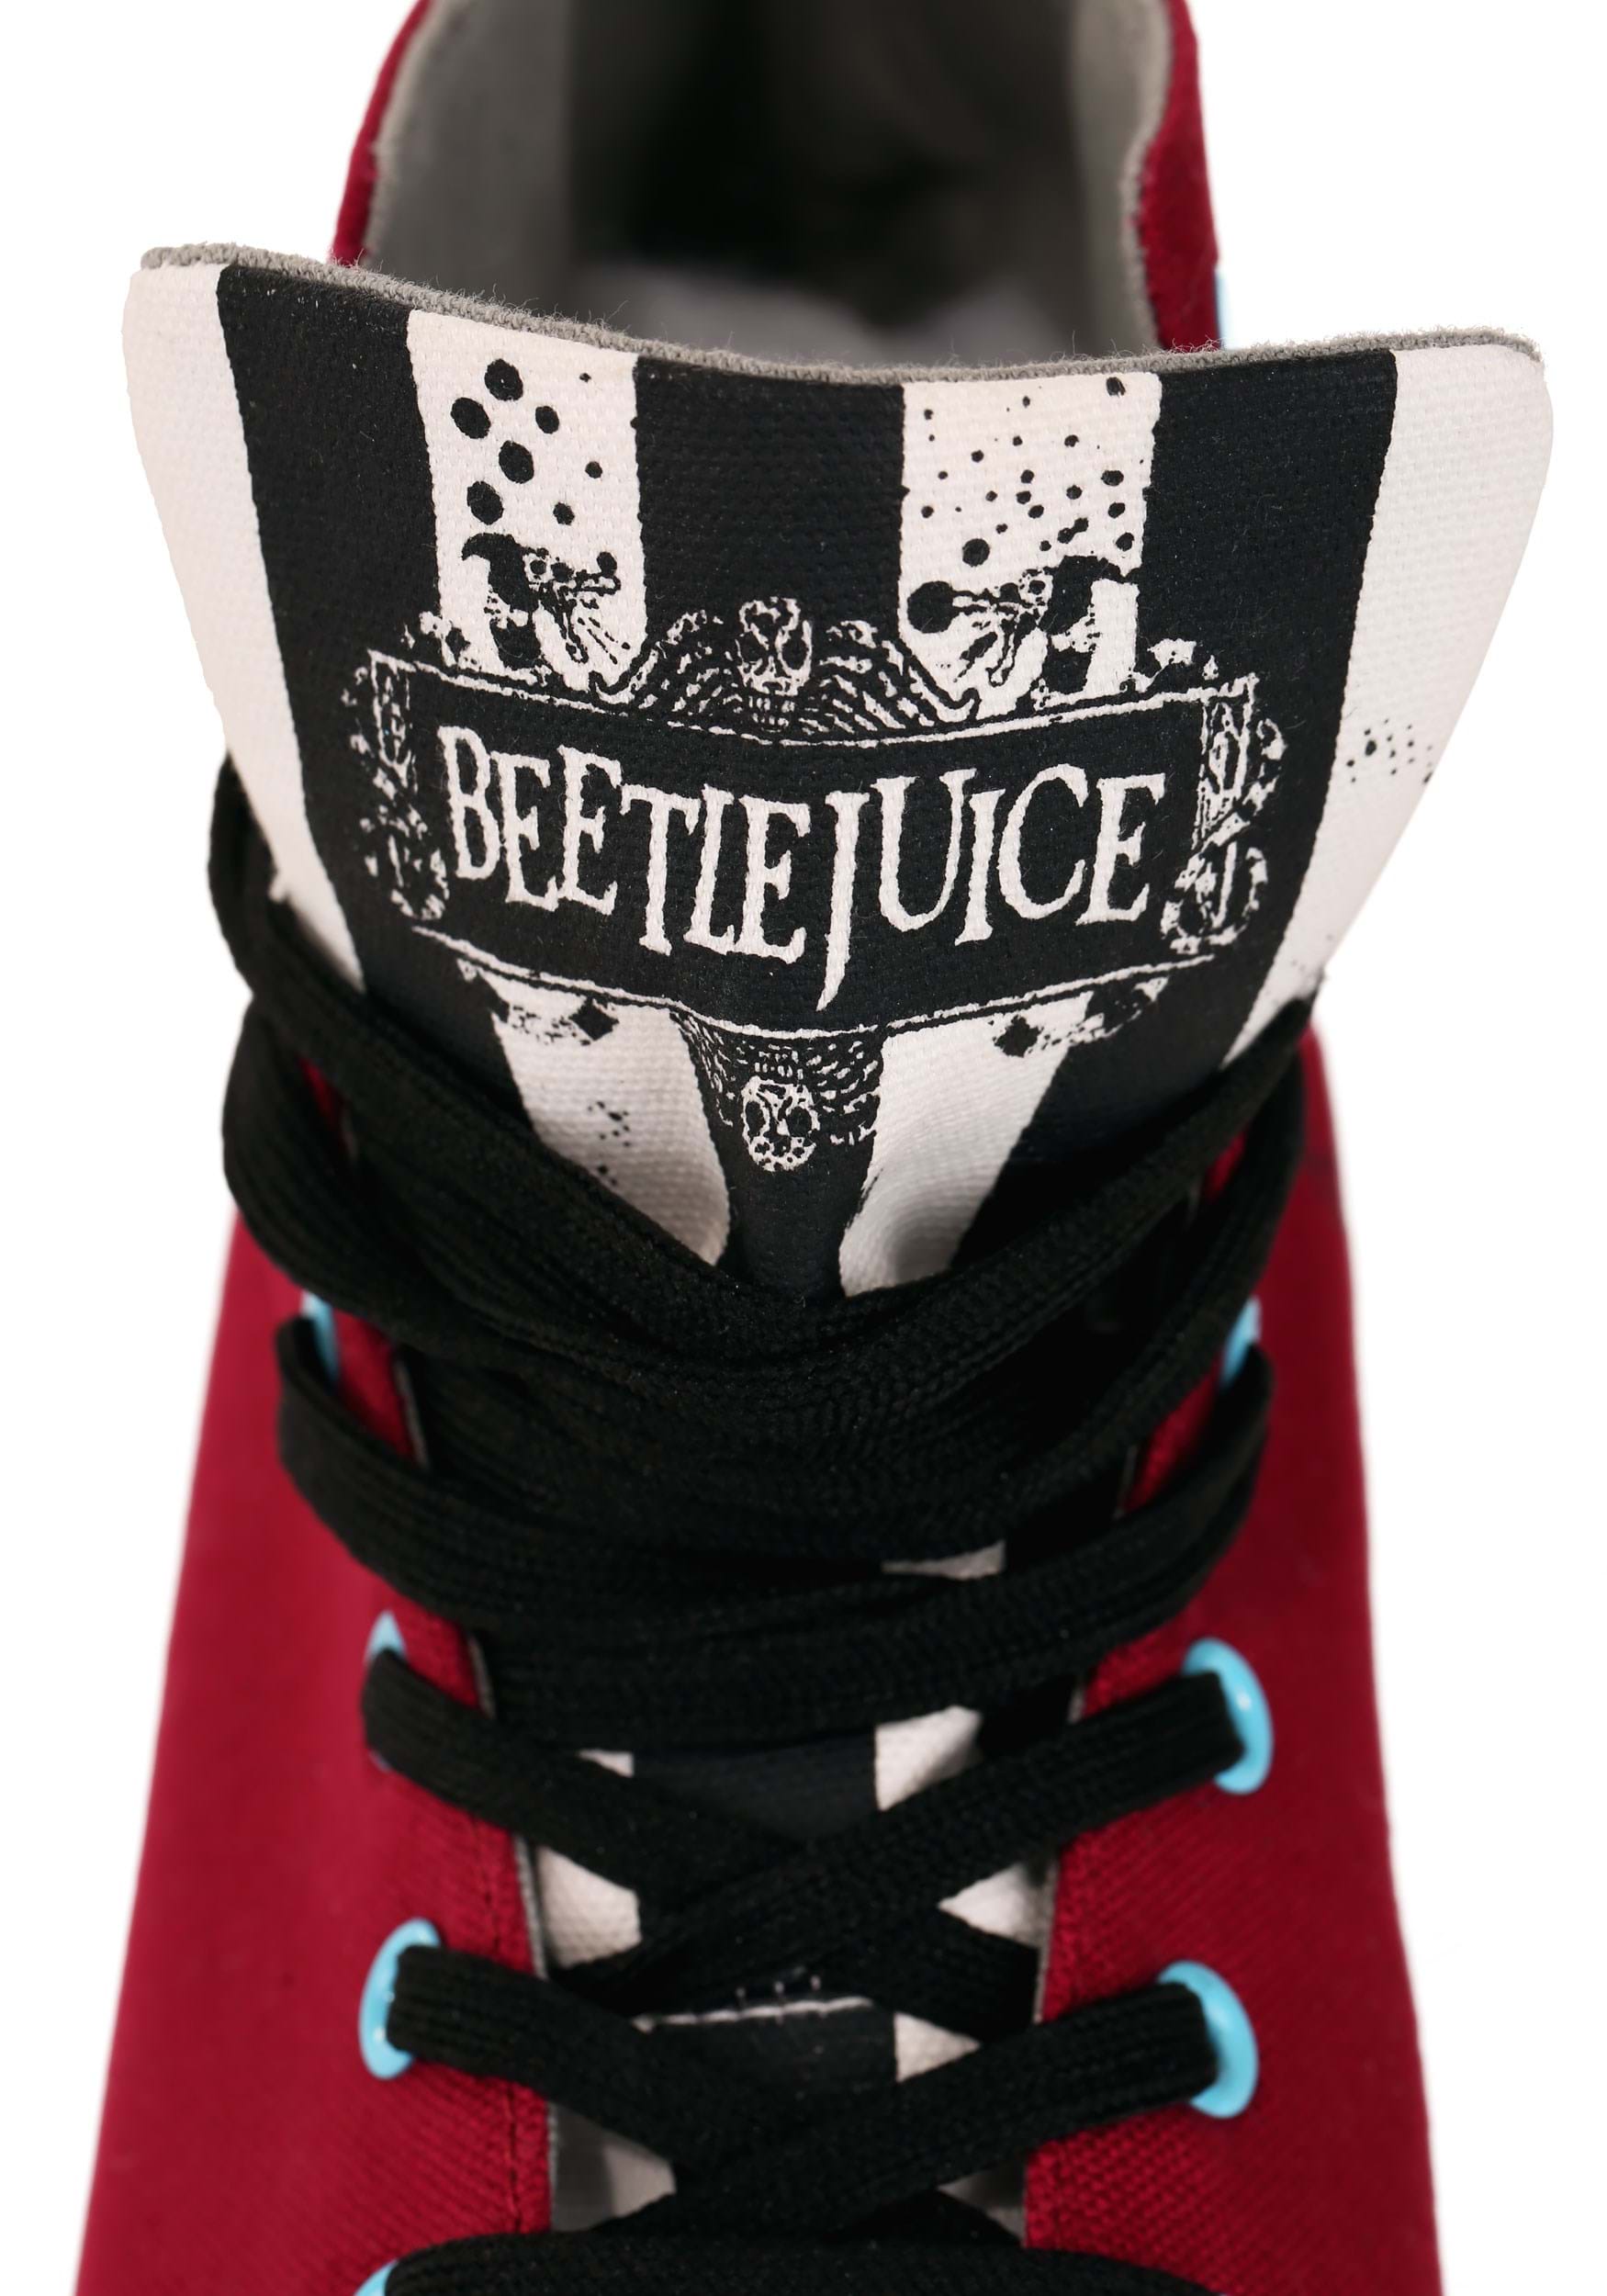 Beetlejuice Recently Deceased Maroon Unisex Sneakers